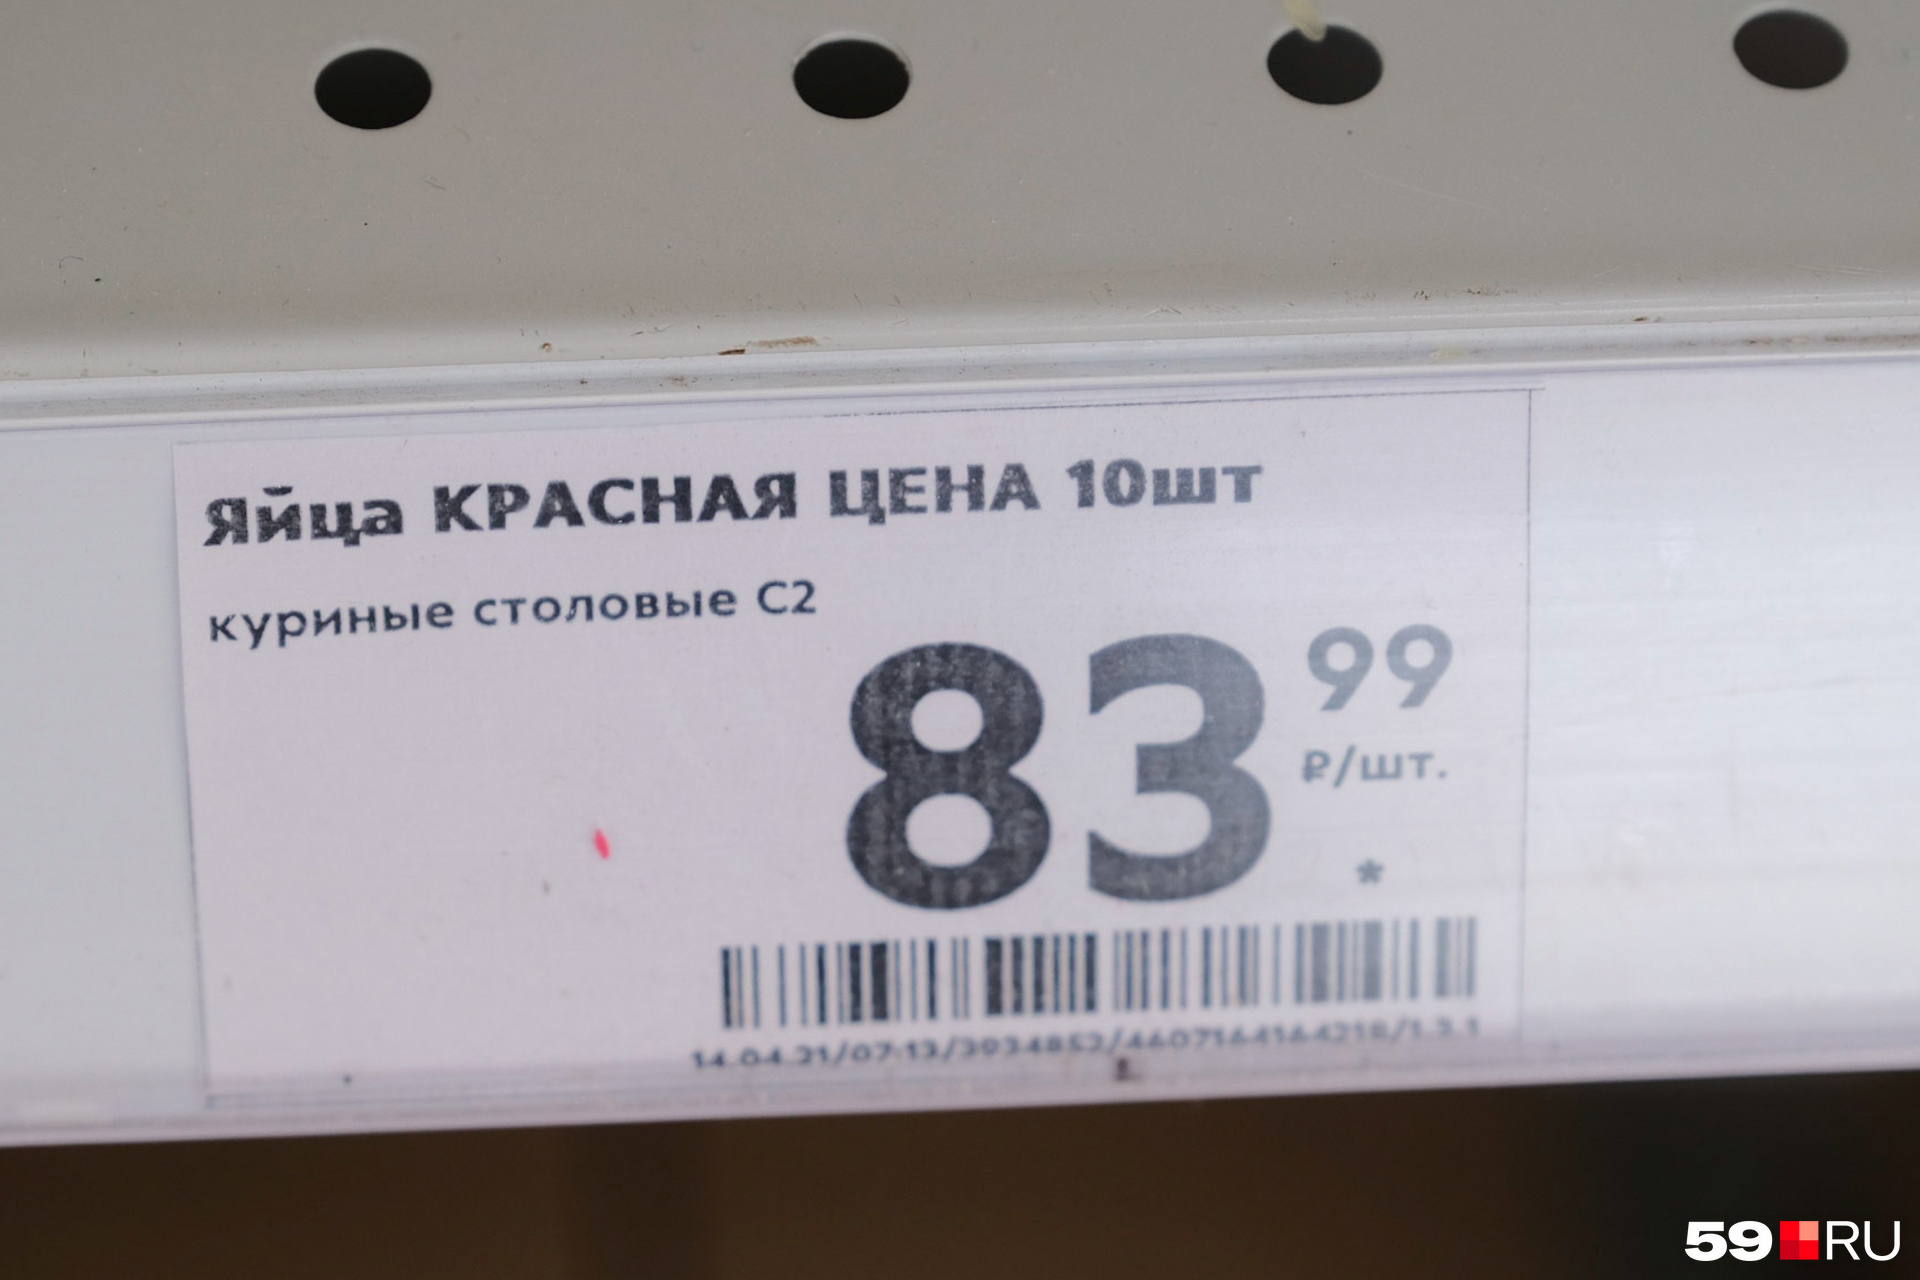 Даже яйца второй категории дороже <nobr class="_">80 рублей</nobr>